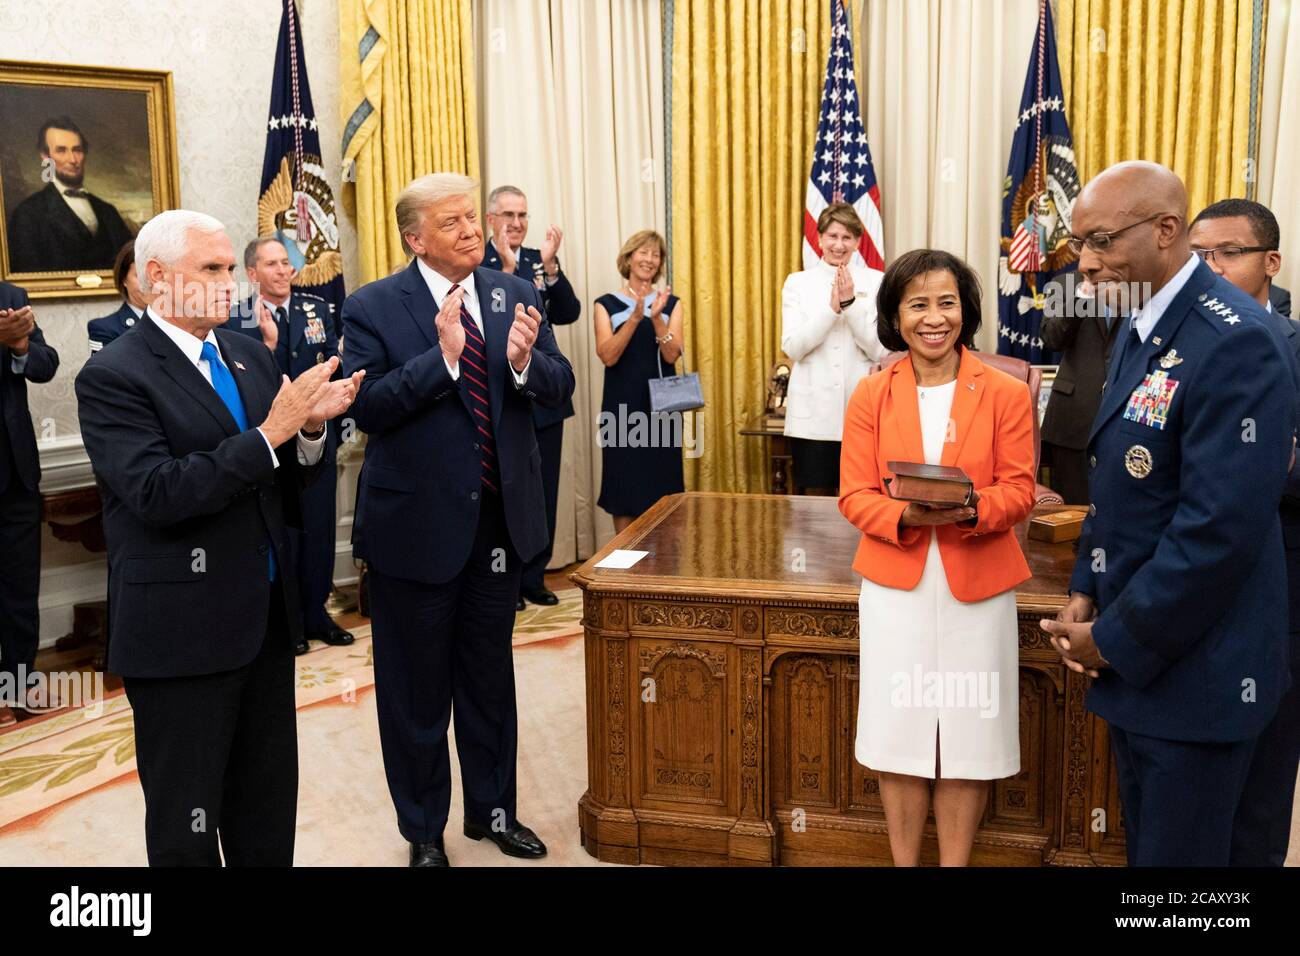 El General de la Fuerza Aérea de los Estados Unidos, Charles Q. Brown, de derecha, y su esposa Sharene Guilford Brown sonreían después de haber sido jurados como el nuevo Jefe de Estado mayor de la Fuerza Aérea en la Oficina Oval de la Casa Blanca el 4 de agosto de 2020 en Washington, DC. Foto de stock